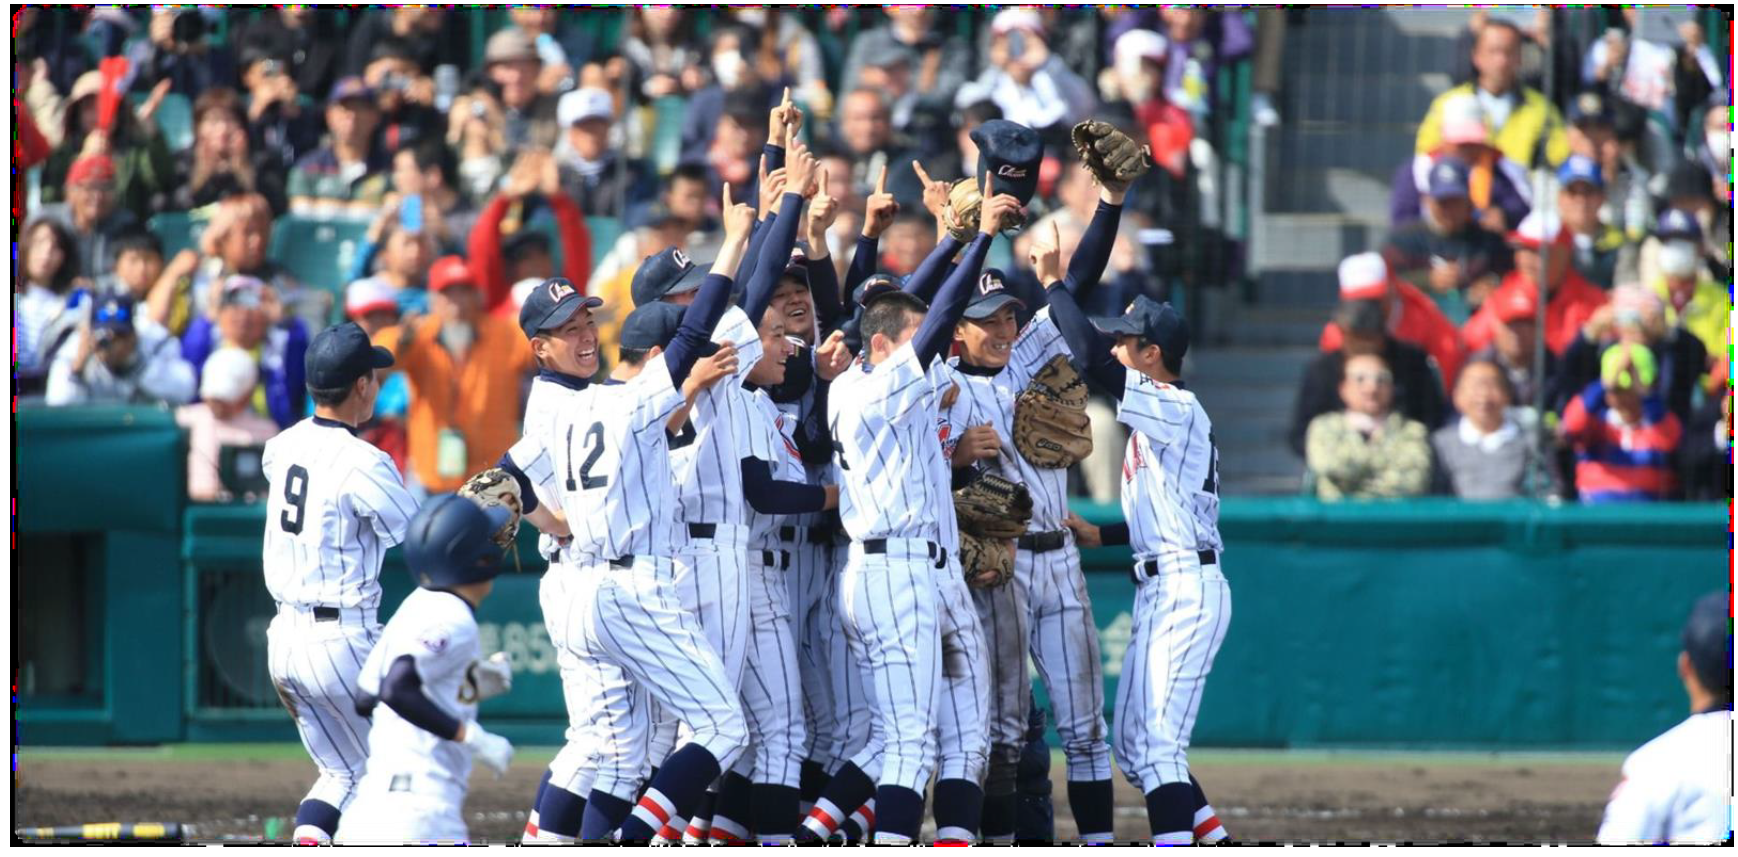 第85回記念選抜高等学校野球大会にて浦和学院が優勝した瞬間